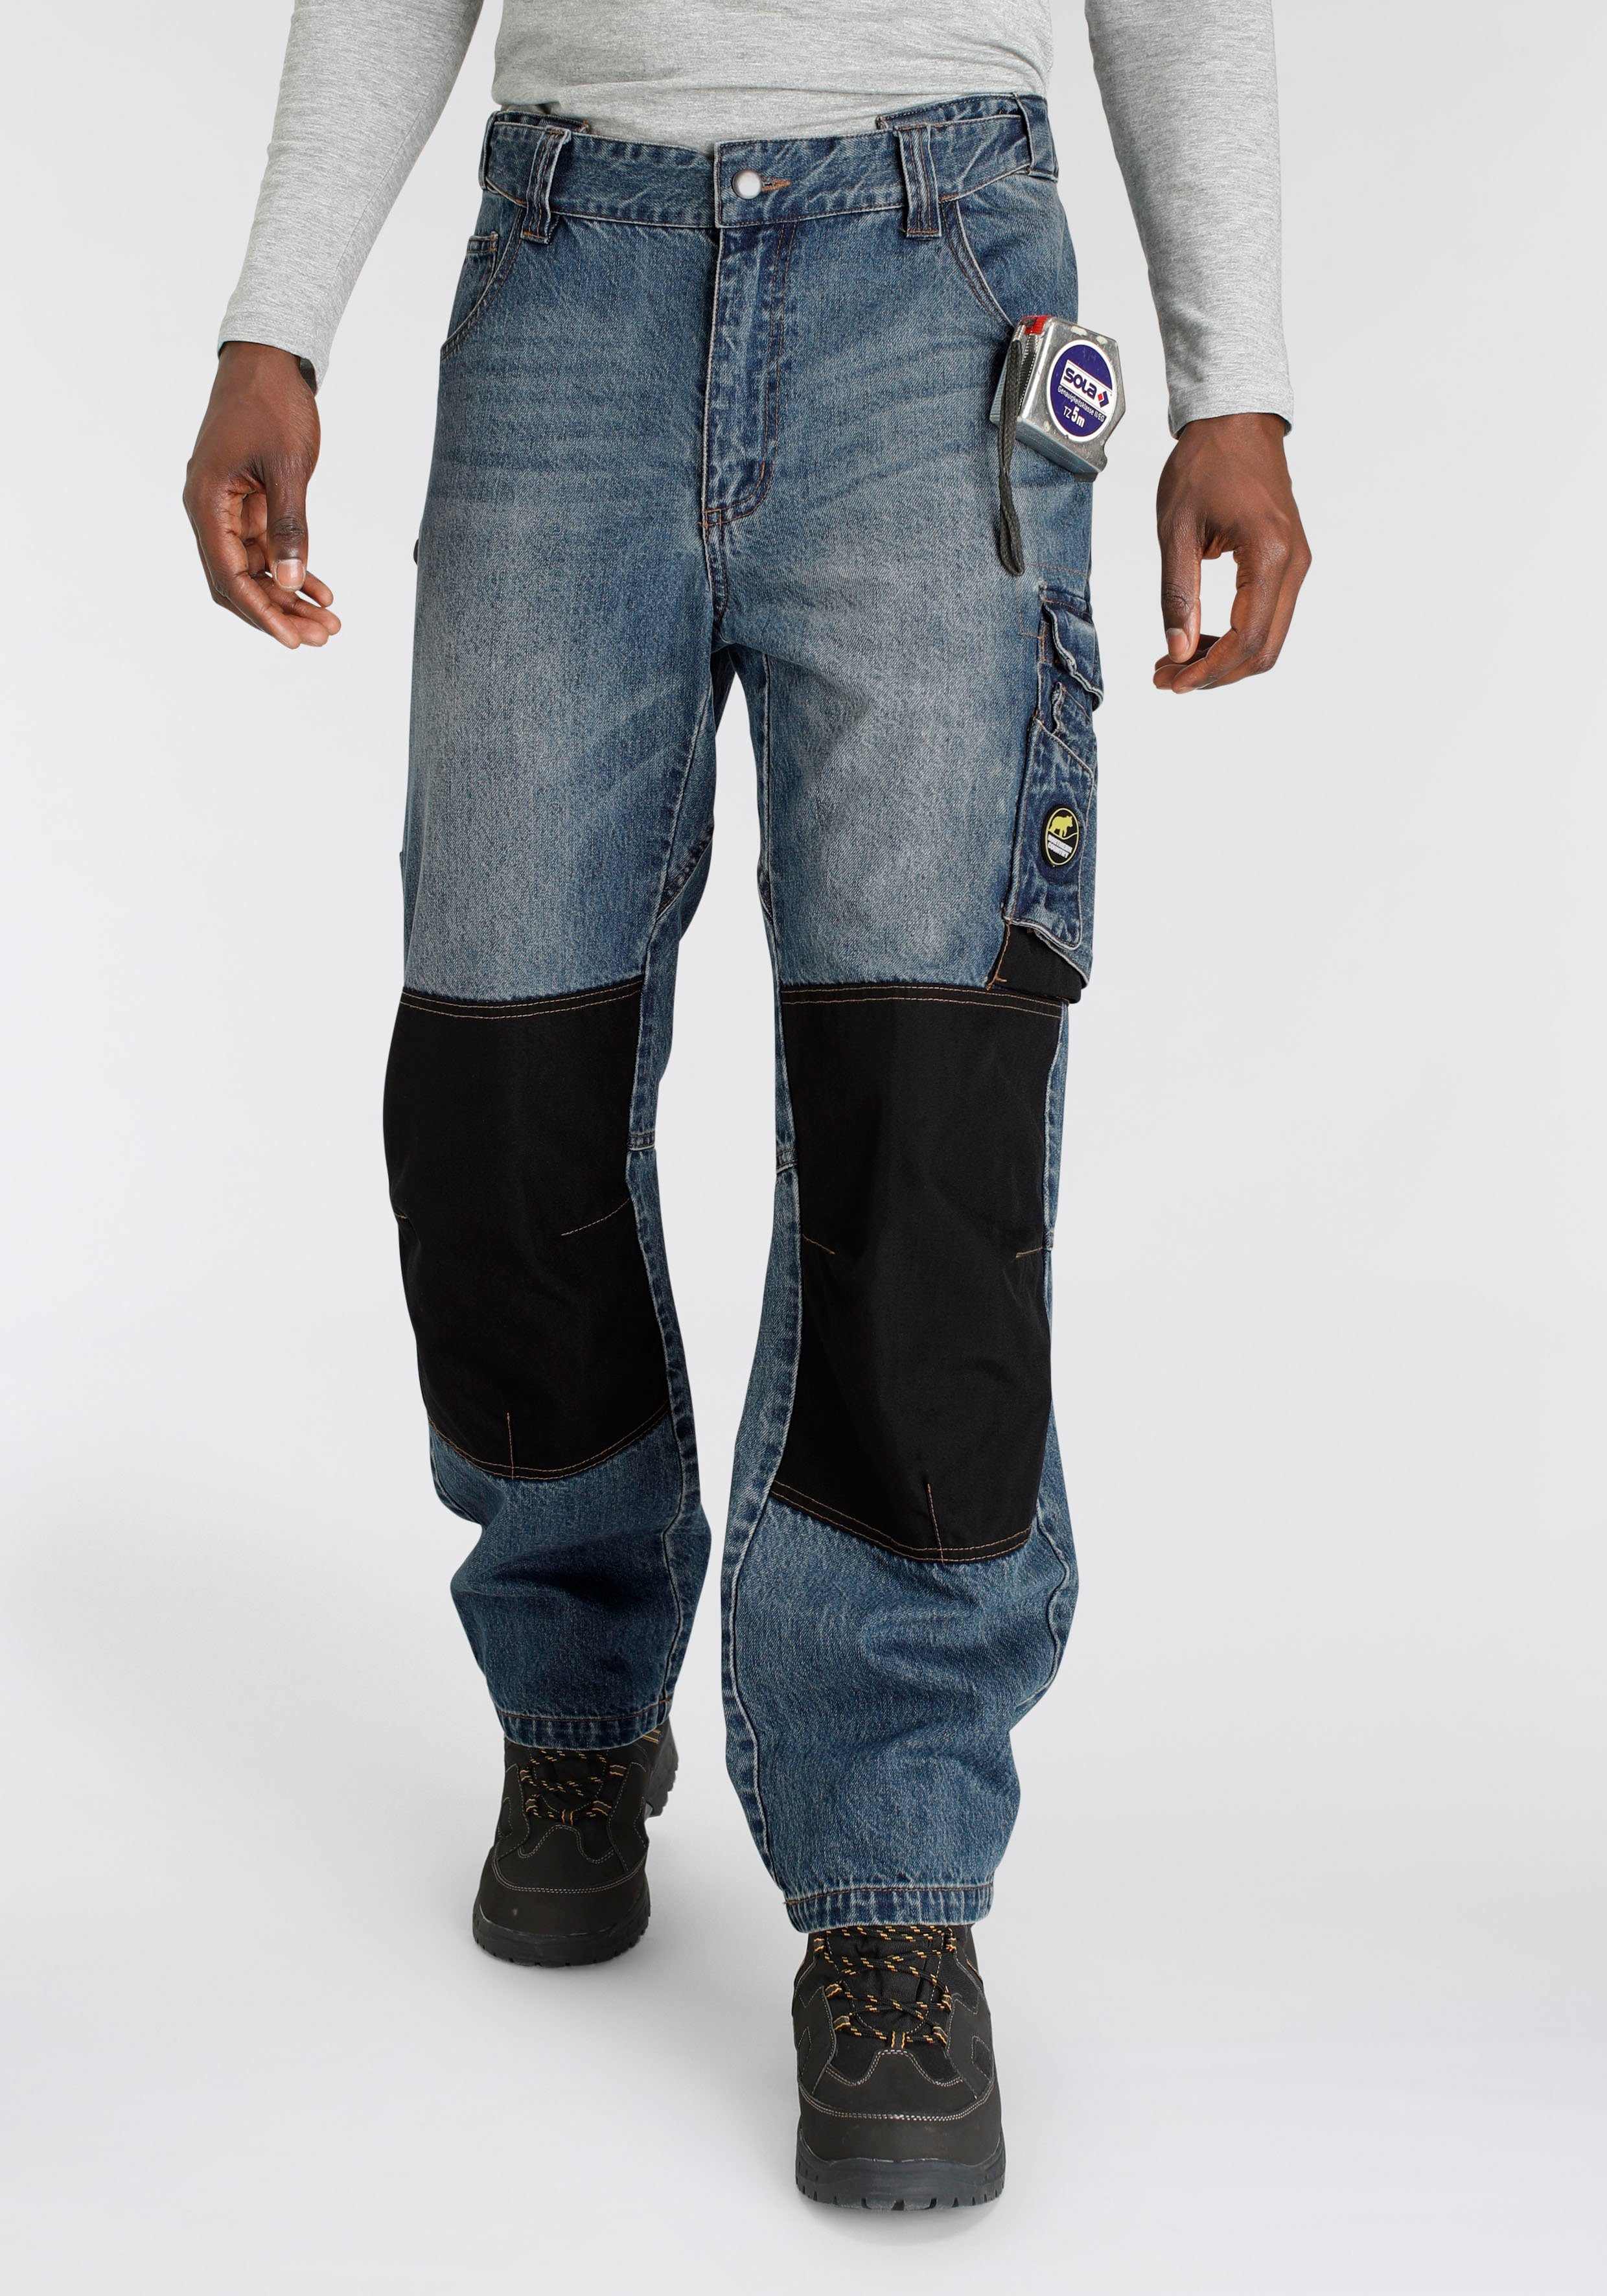 Taschen, Country Knieverstärkung Arbeitshose Jeansstoff, Northern Jeans praktischen Cordura Multipocket mit dehnbarem 100% robuster Bund, aus comfort Baumwolle, 9 fit) (aus